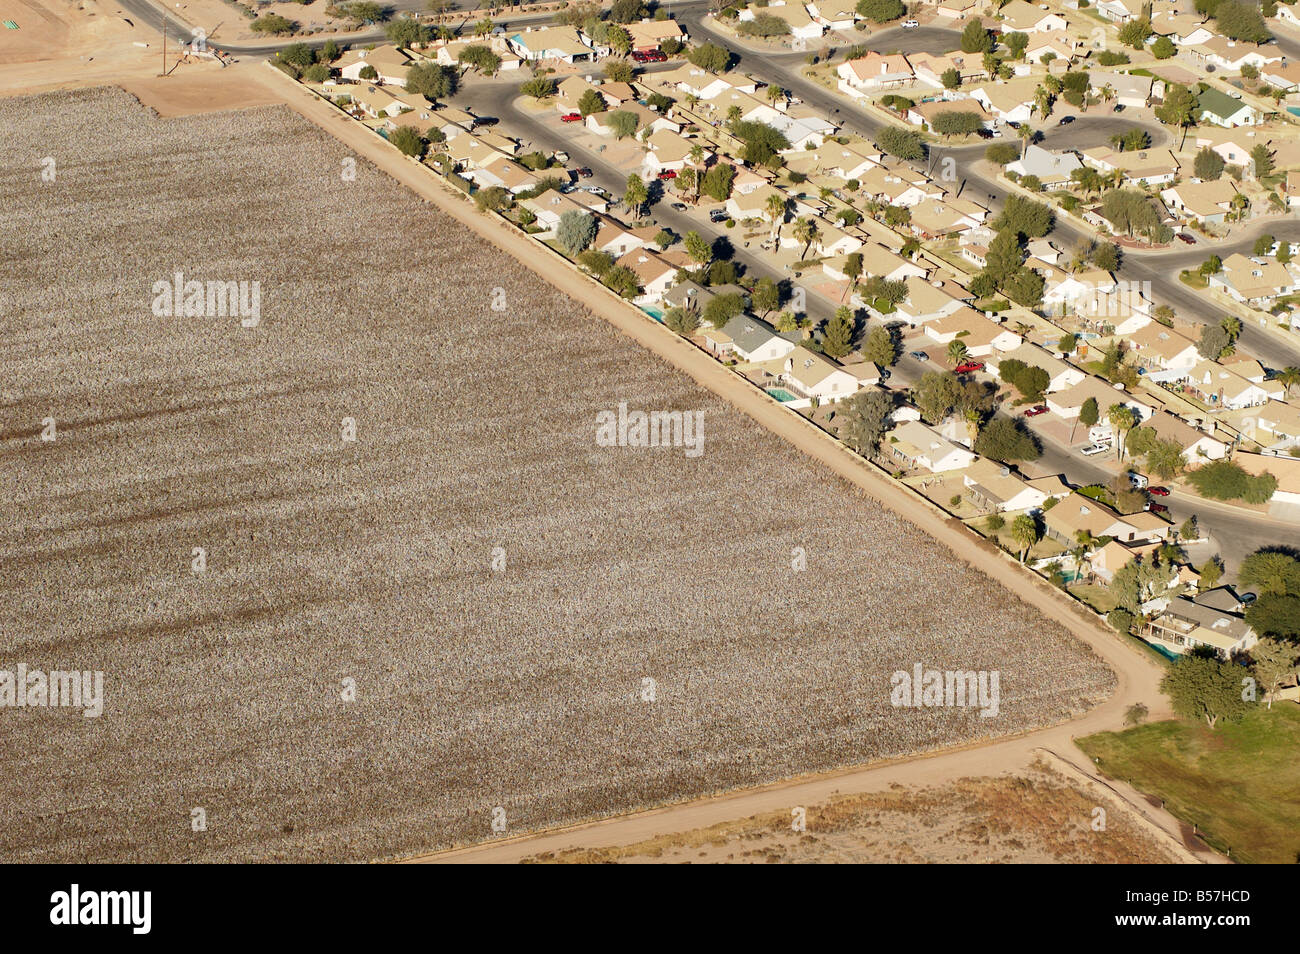 Luftaufnahme von einer Baumwollfarm in Arizona Baumwollfeld angrenzend an ein Wohngebiet Stockfoto